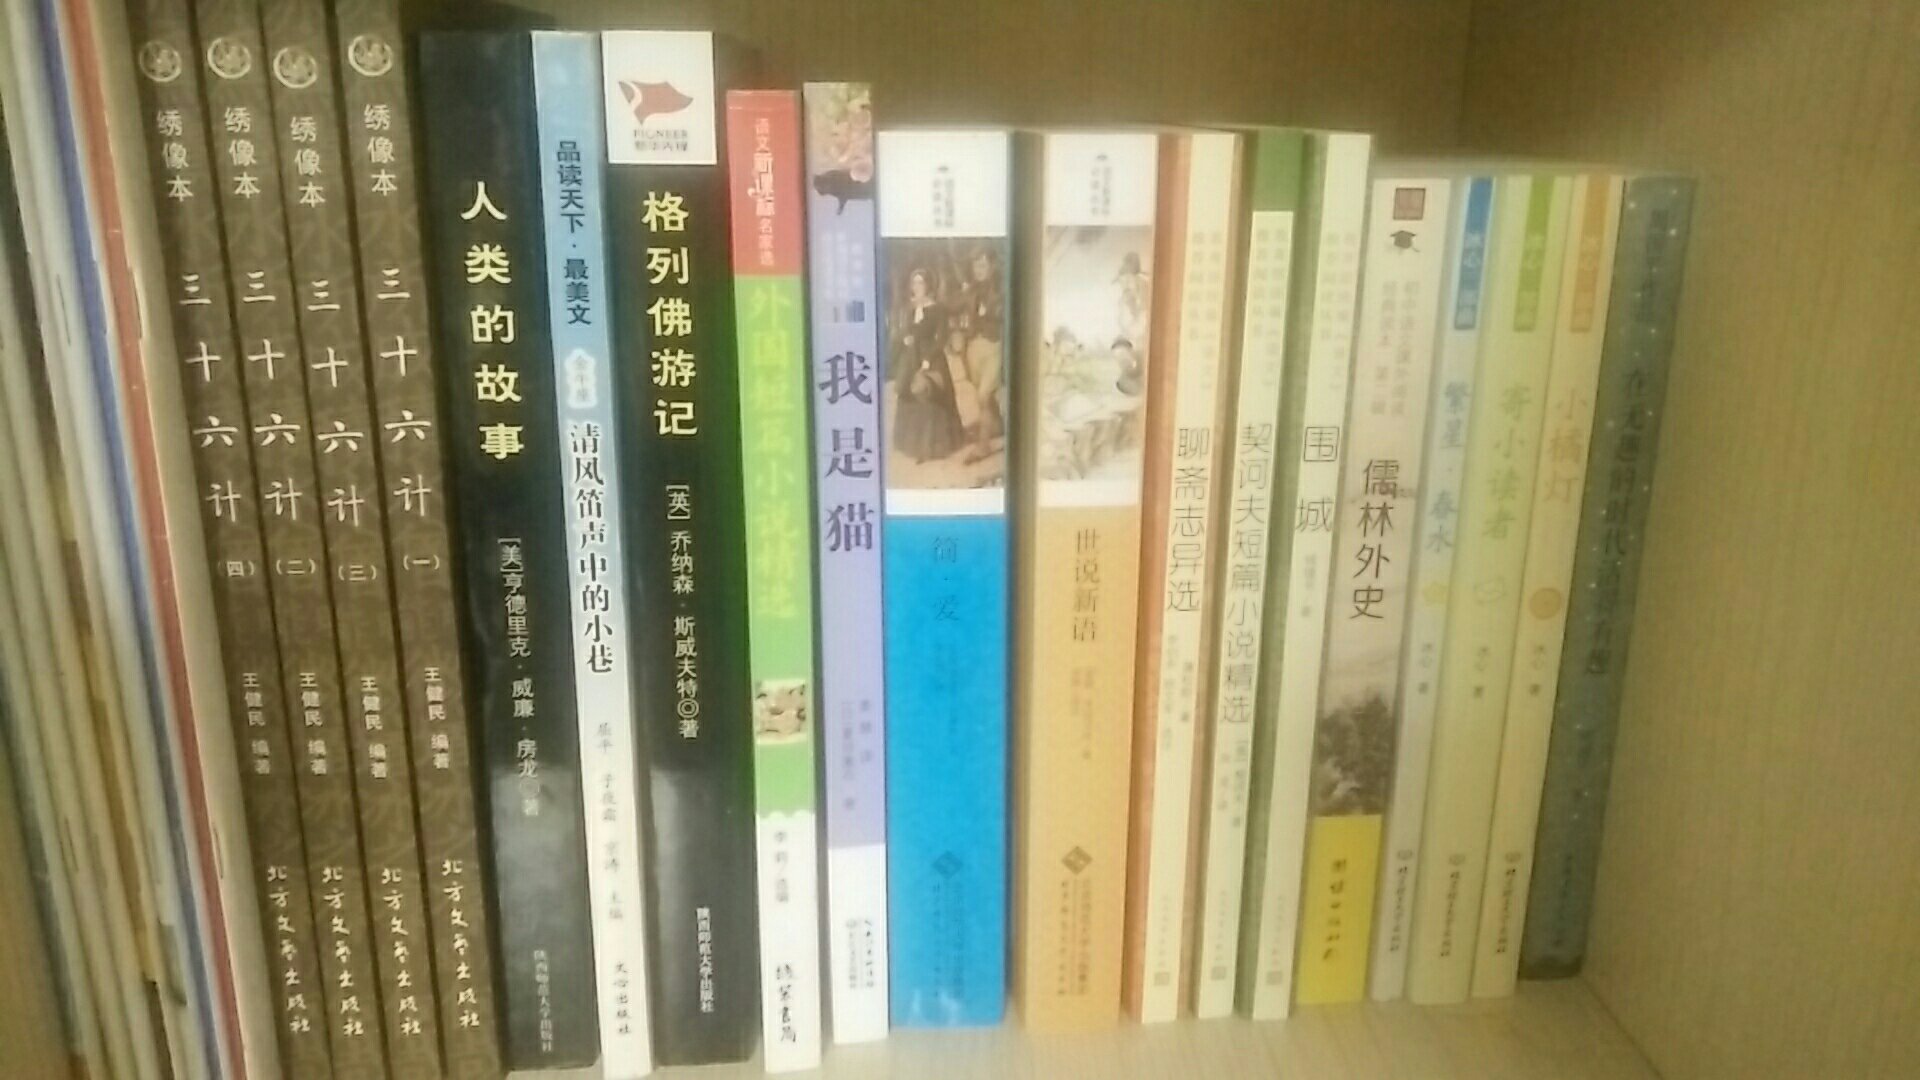 教育部新编初中语文教材指定阅读书，每年暑假都会买几本给孩子读非常不错。